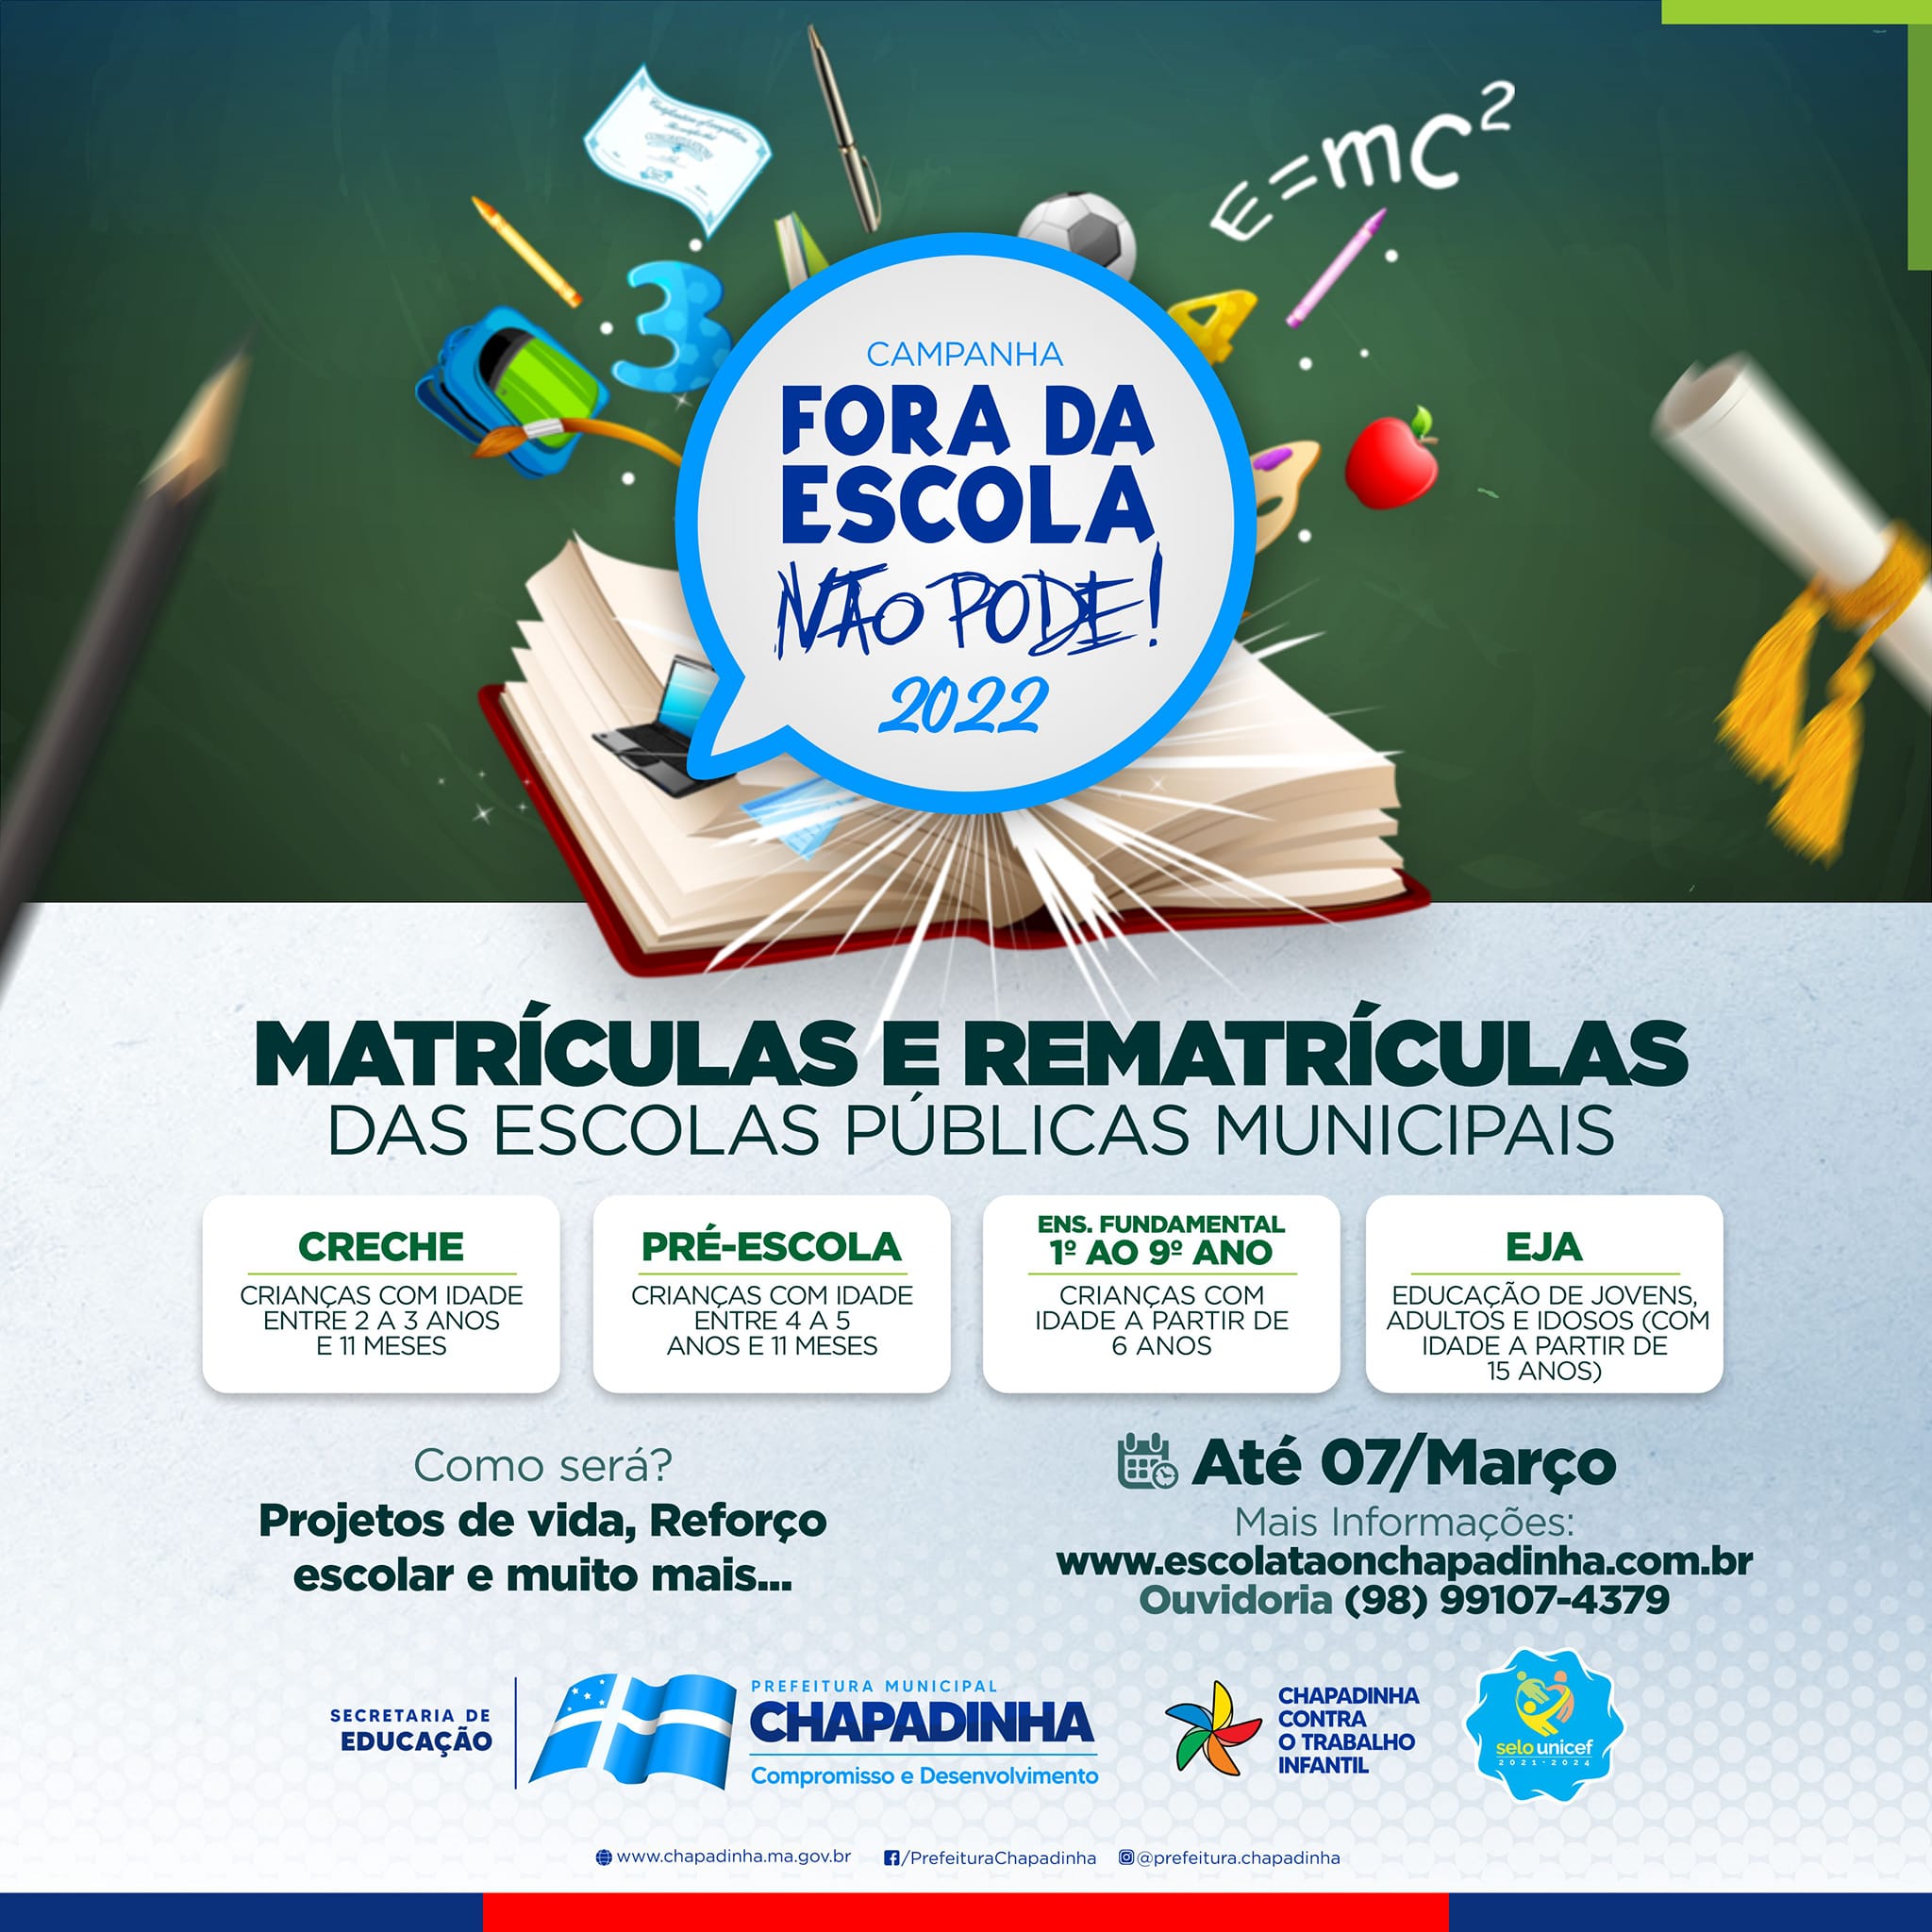 Abertas as matrículas 2022 nas escolas da Rede Municipal de Ensino de Chapadinha